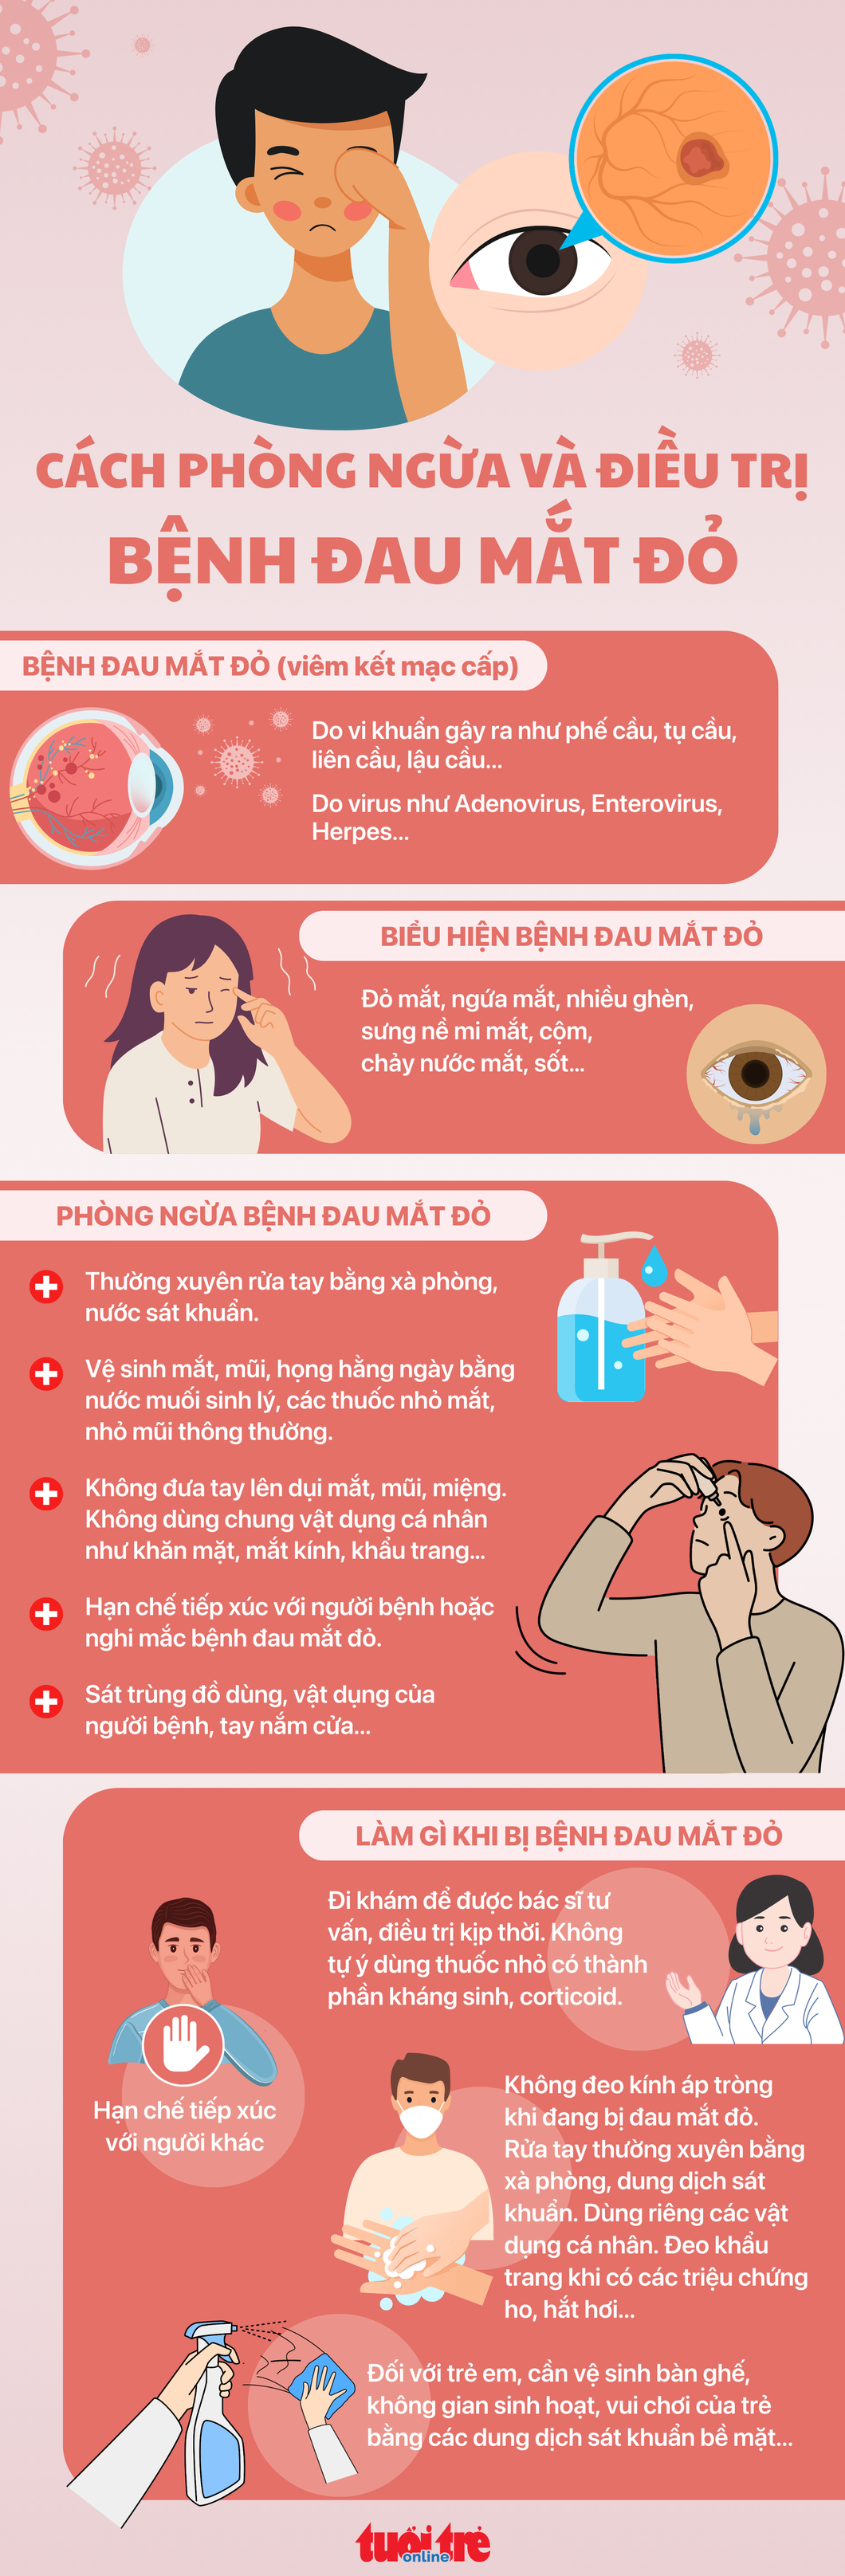 Cách phòng tránh và xử trí khi bị đau mắt đỏ - Đồ họa: NGỌC THÀNH 